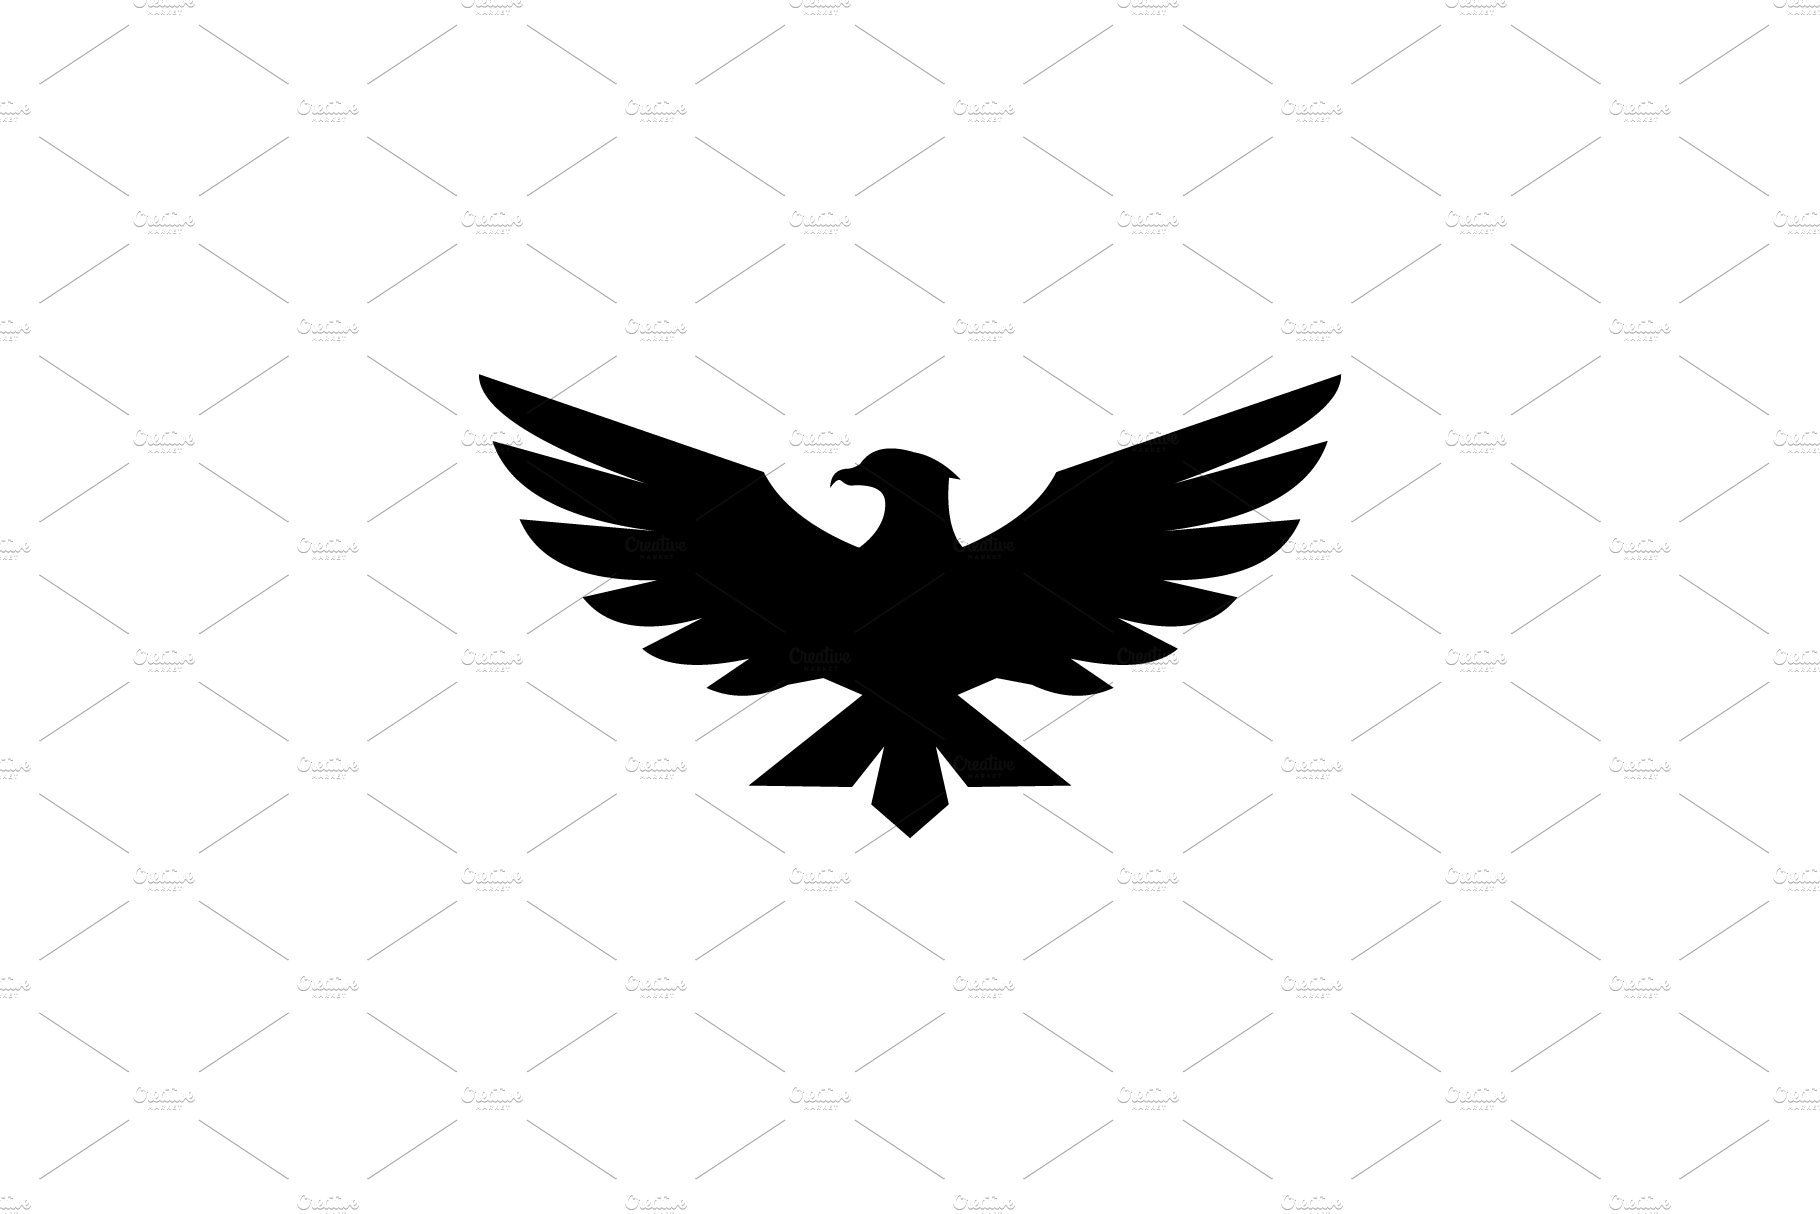 Falcon Eagle Bird Logo Template cover image.